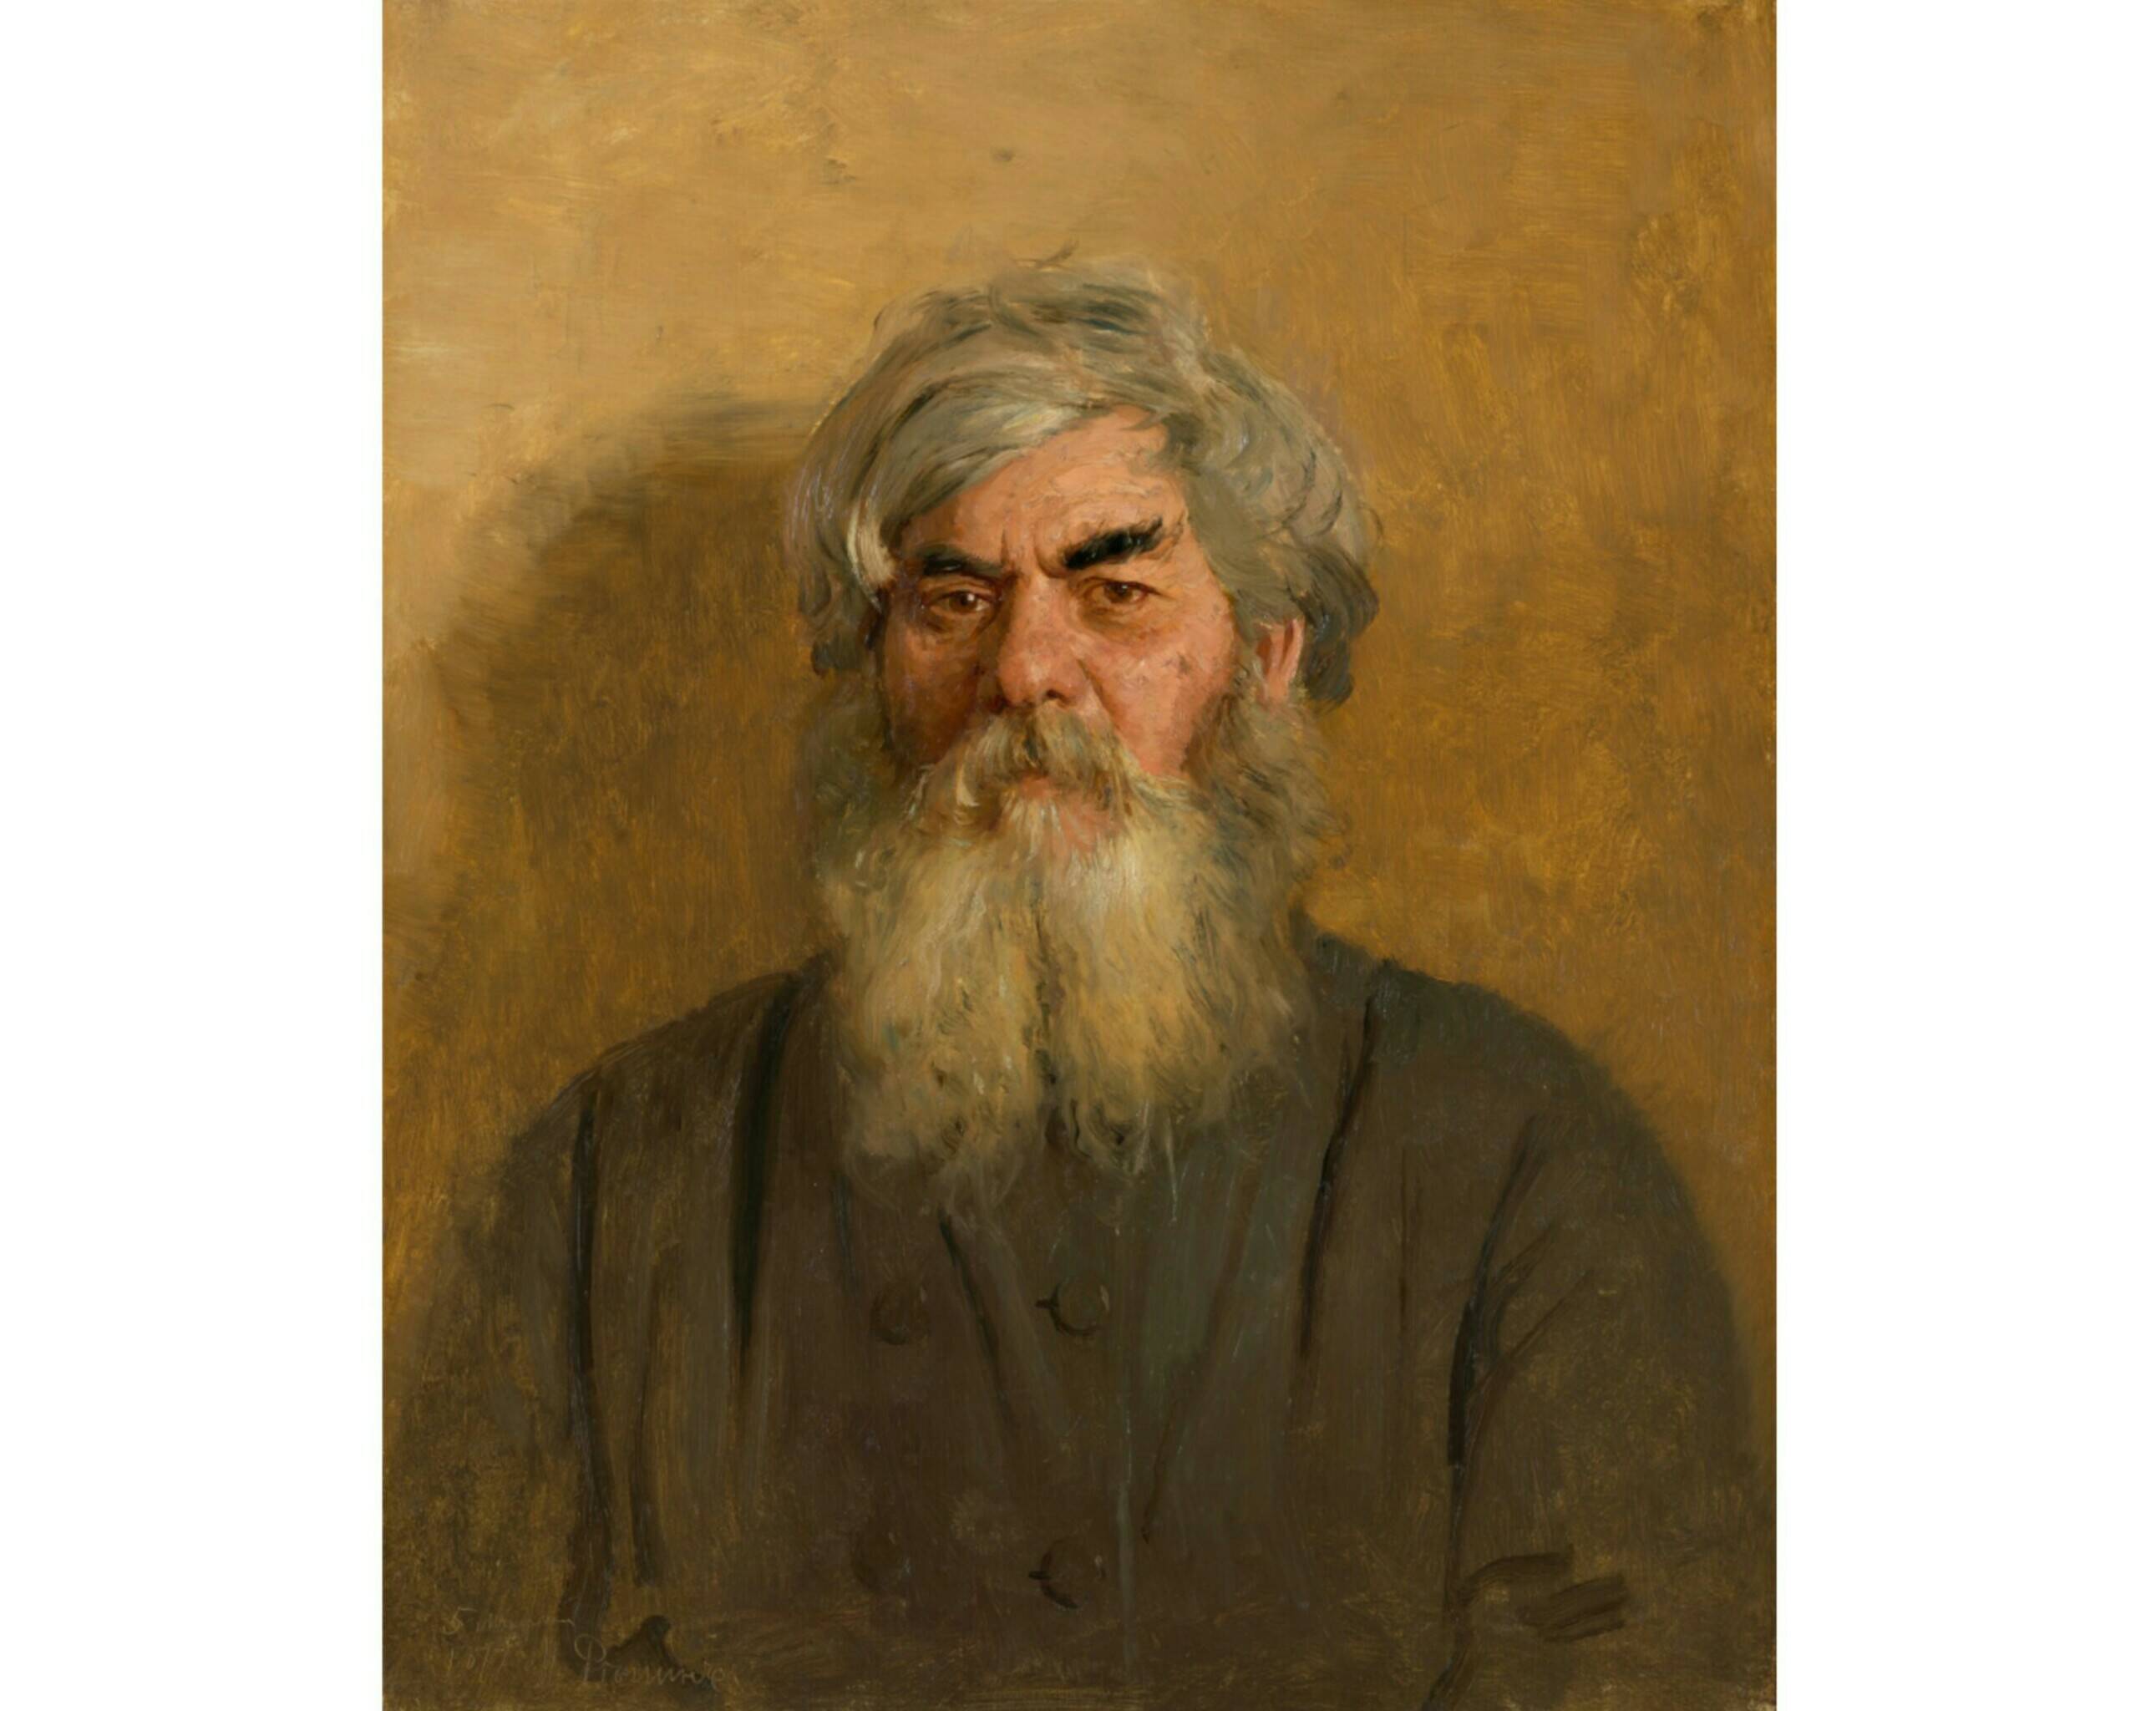 И.Е. Репин «Мужик с дурным глазом», 1877 год. Из собрания Третьяковской галереи.